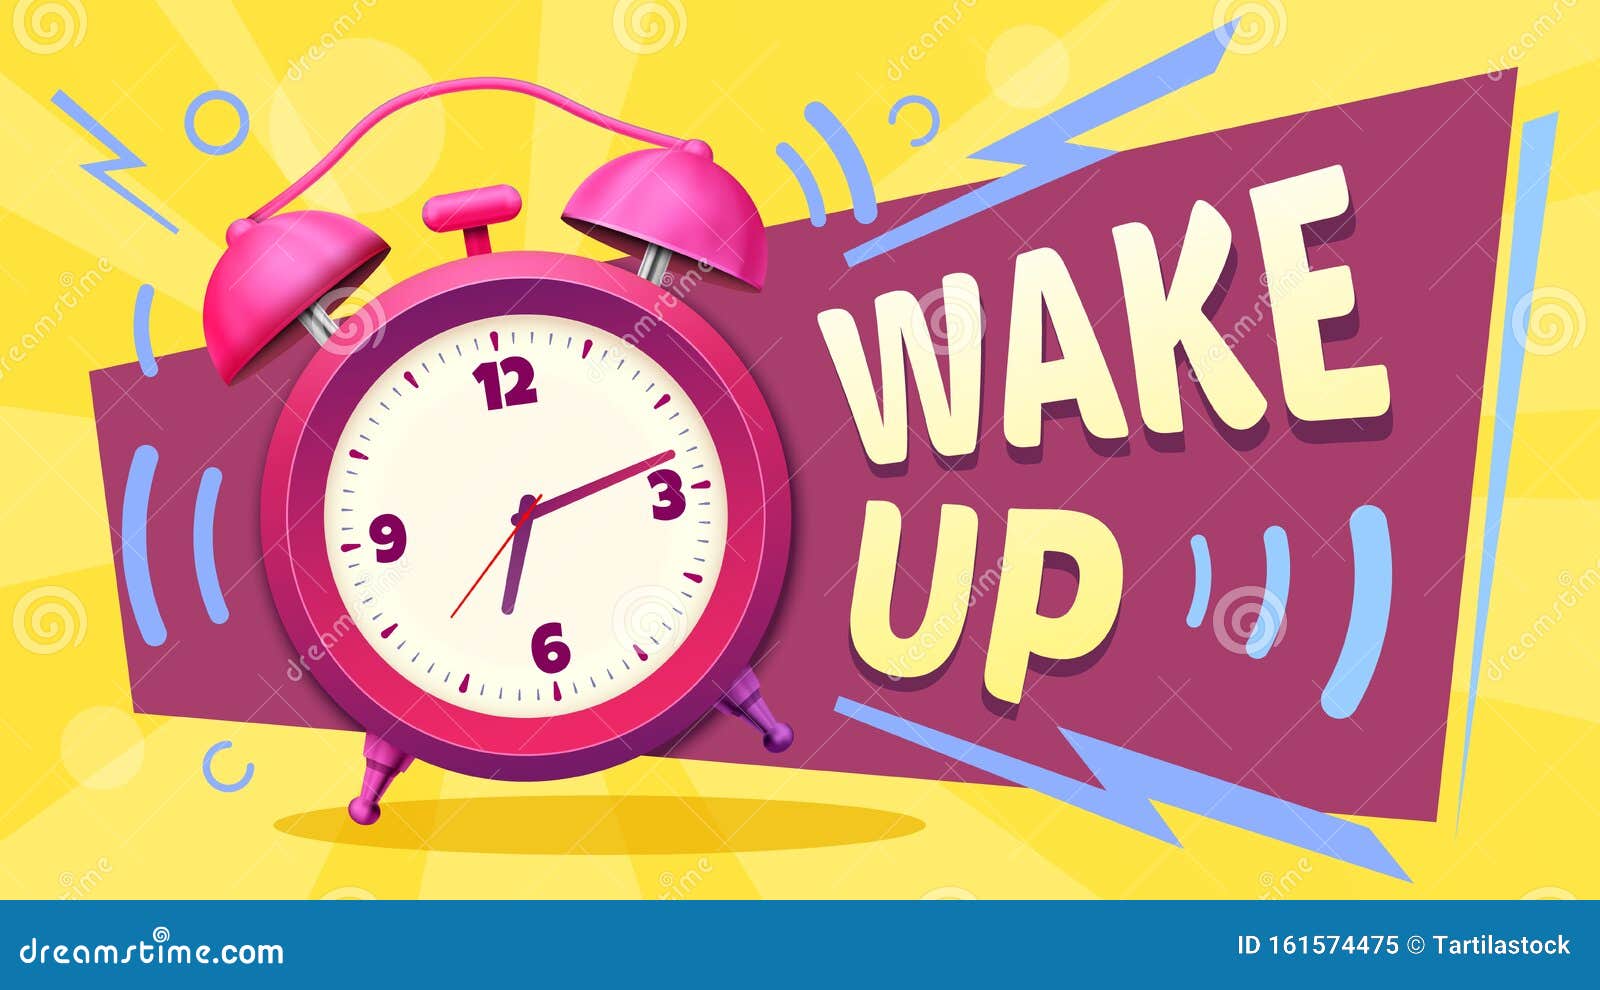 wake up poster. good morning, alarm clock ringing and mornings wakes  